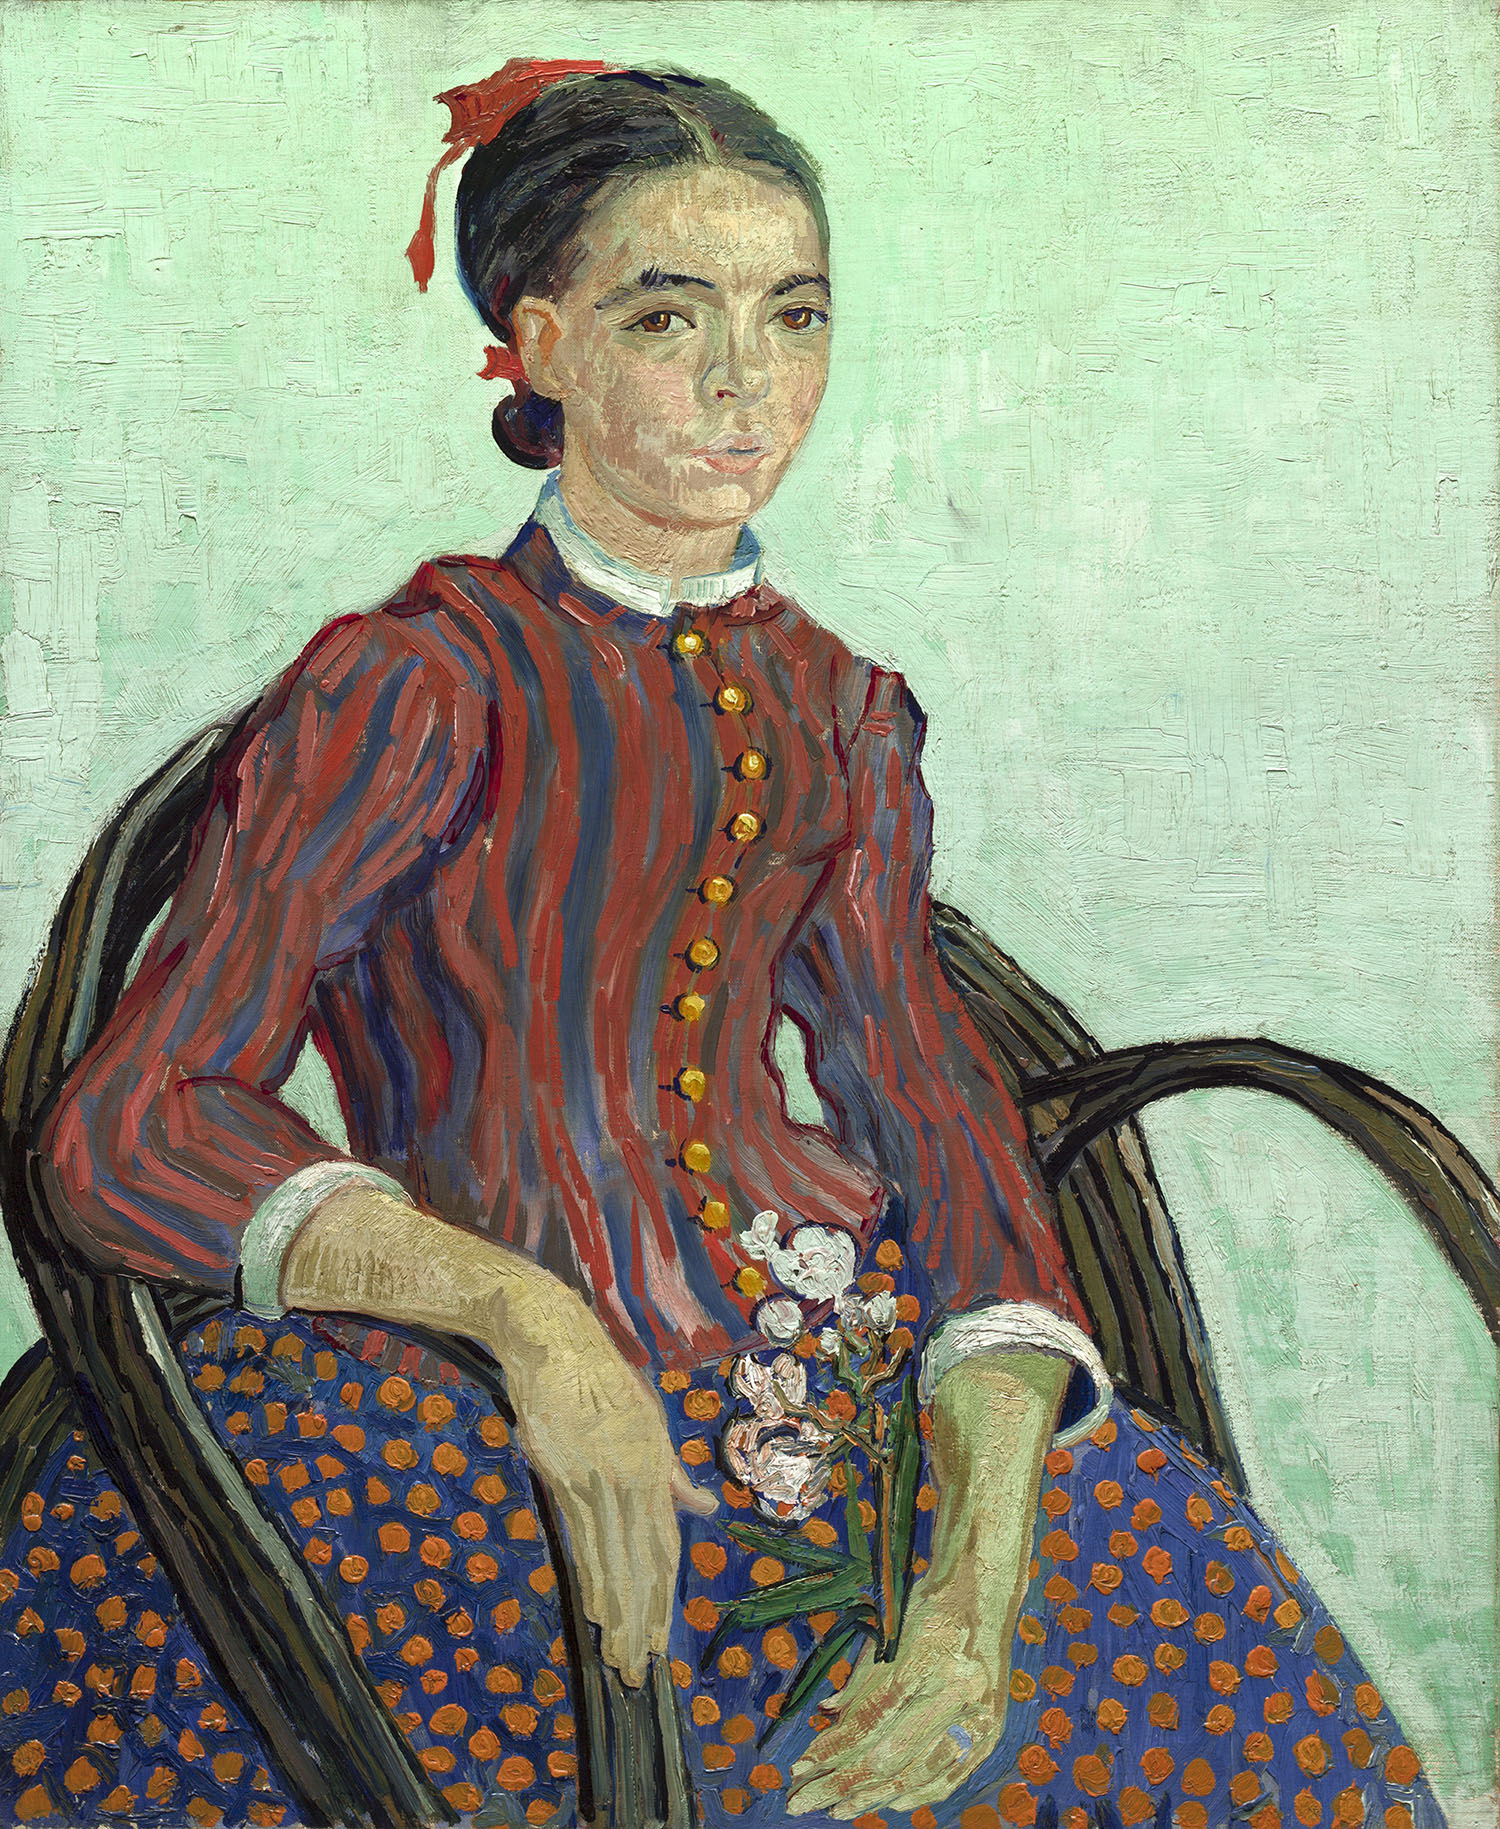 Винсент Ван Гог. "Молодая японка". 1888. Национальная галерея искусств, Вашингтон.